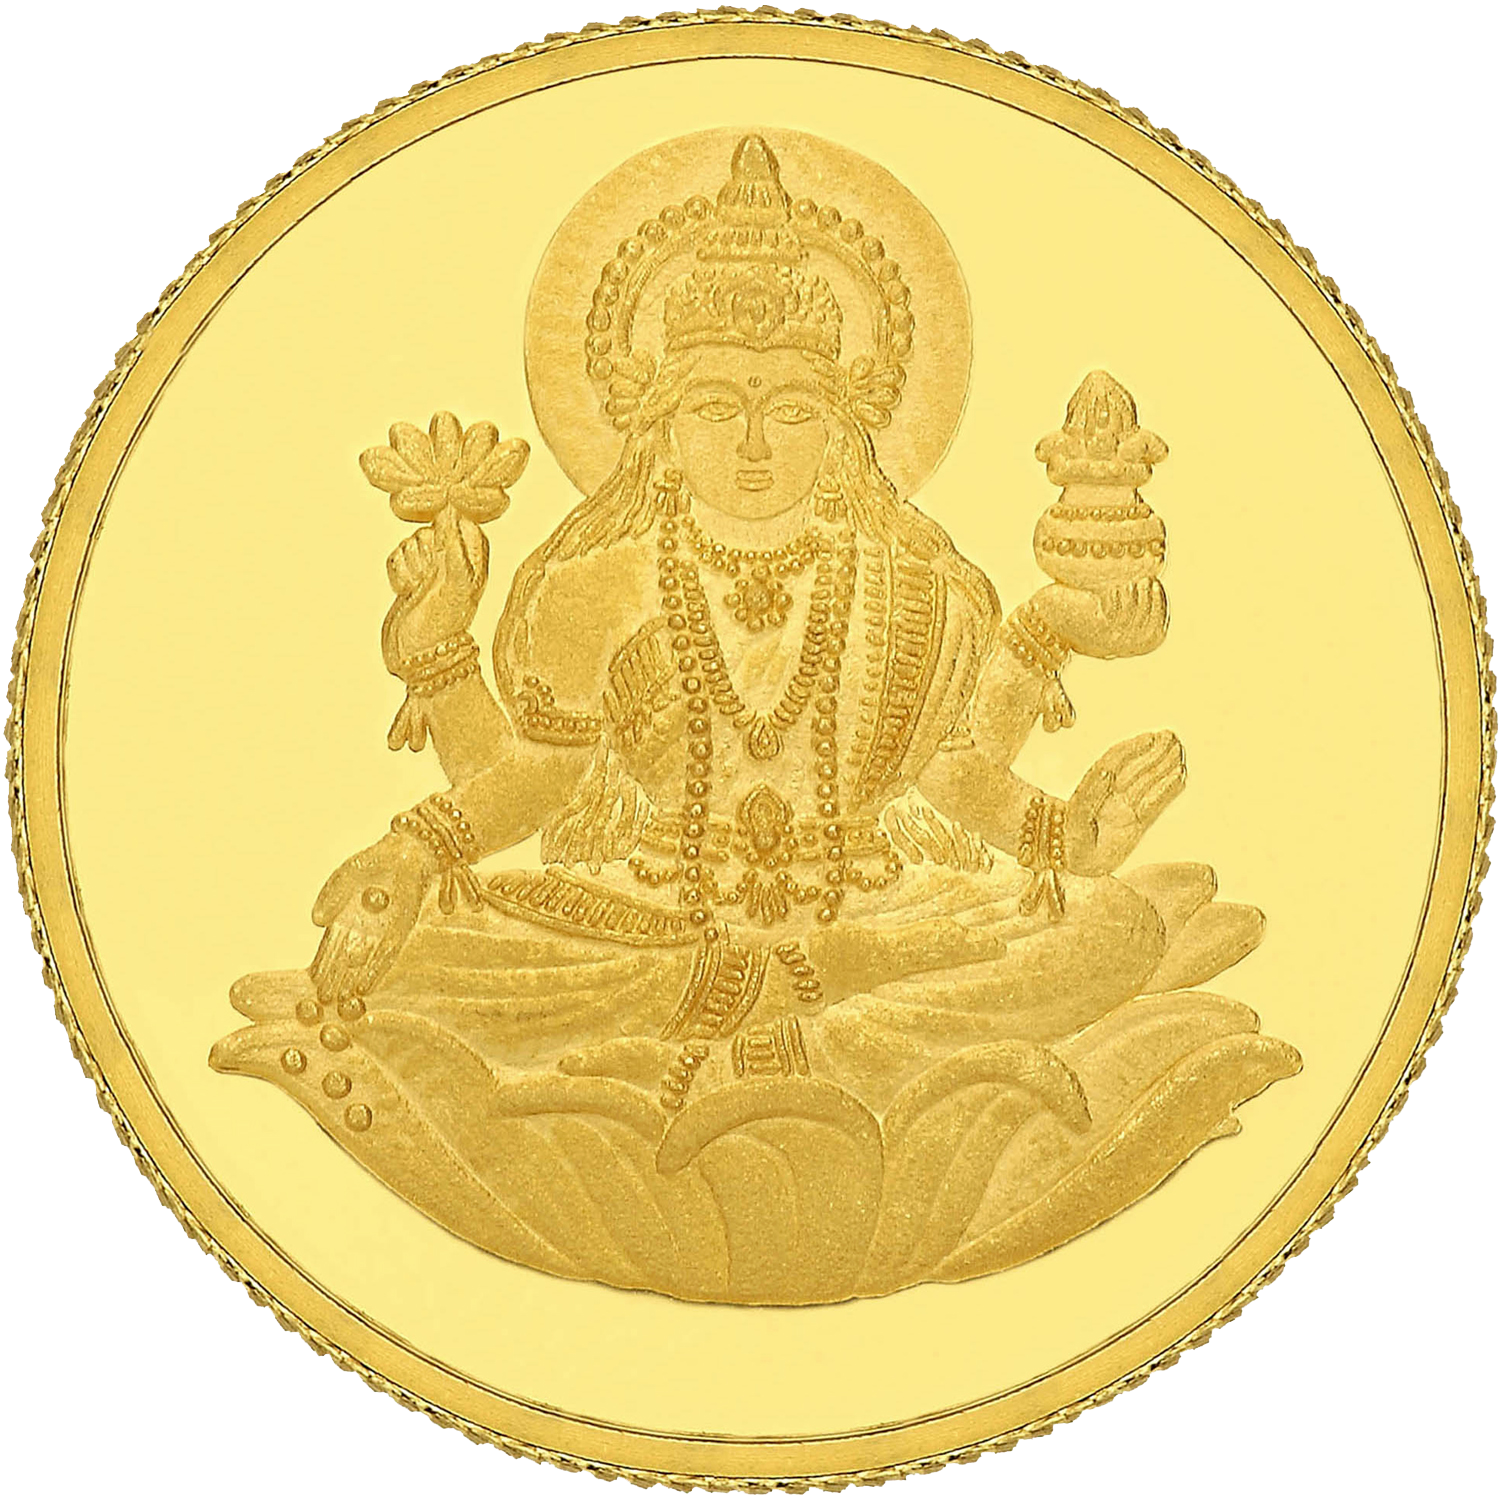 Lakshmi Gold Coin Photos PNG Image